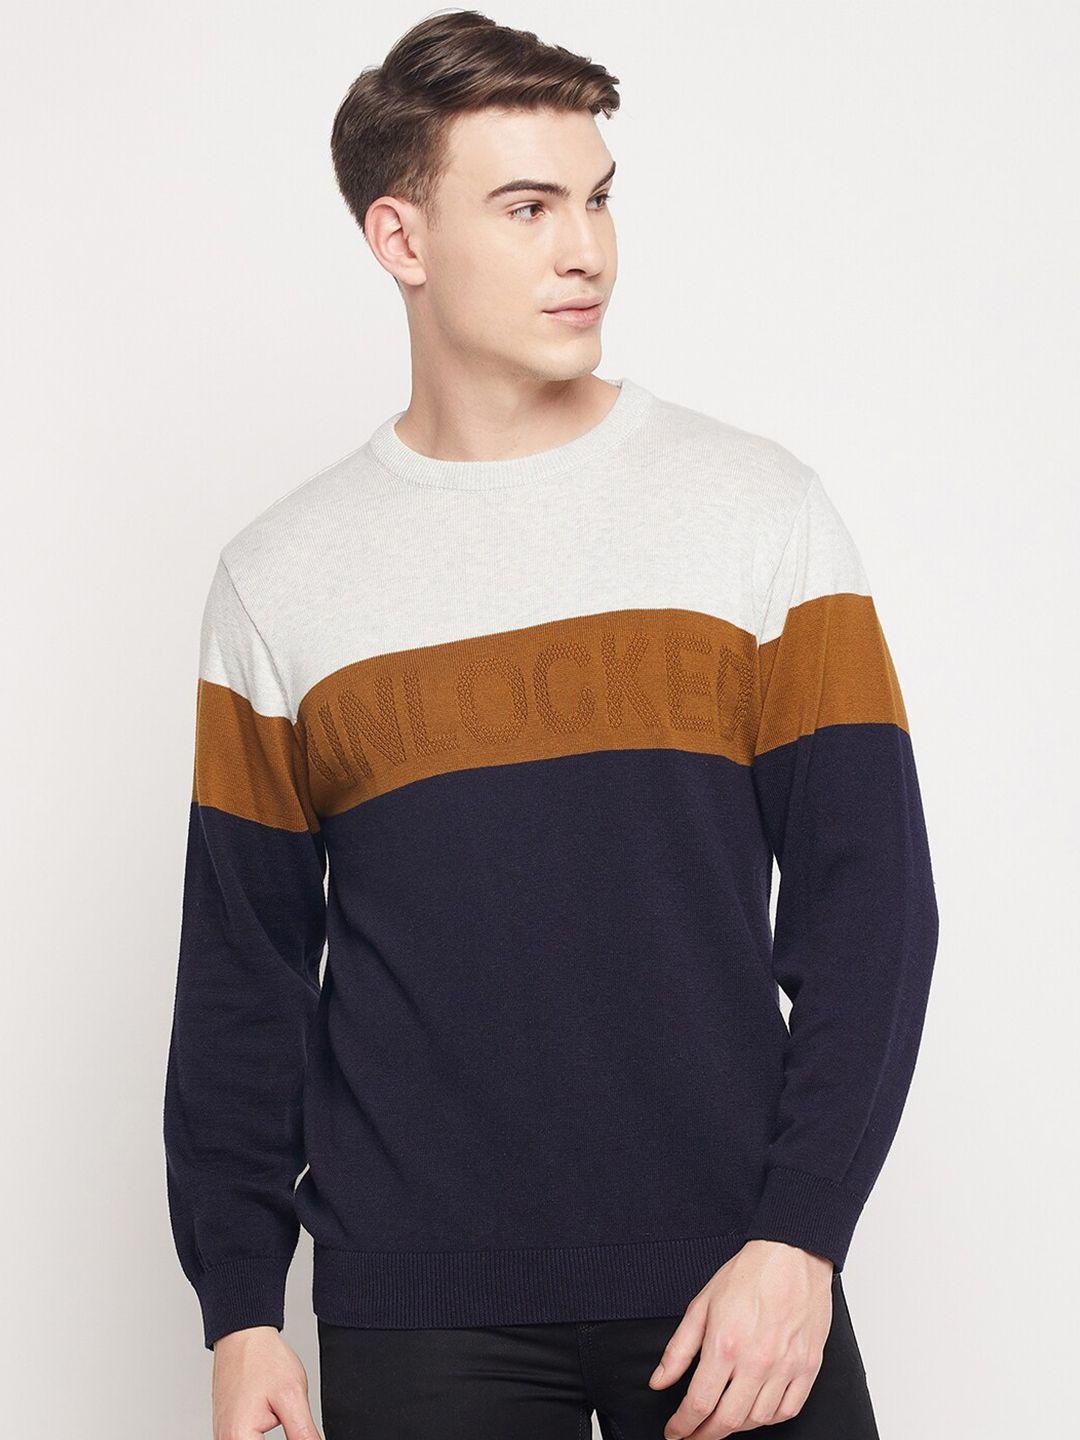 duke-men-white-&-brown-colourblocked-acrylic-pullover